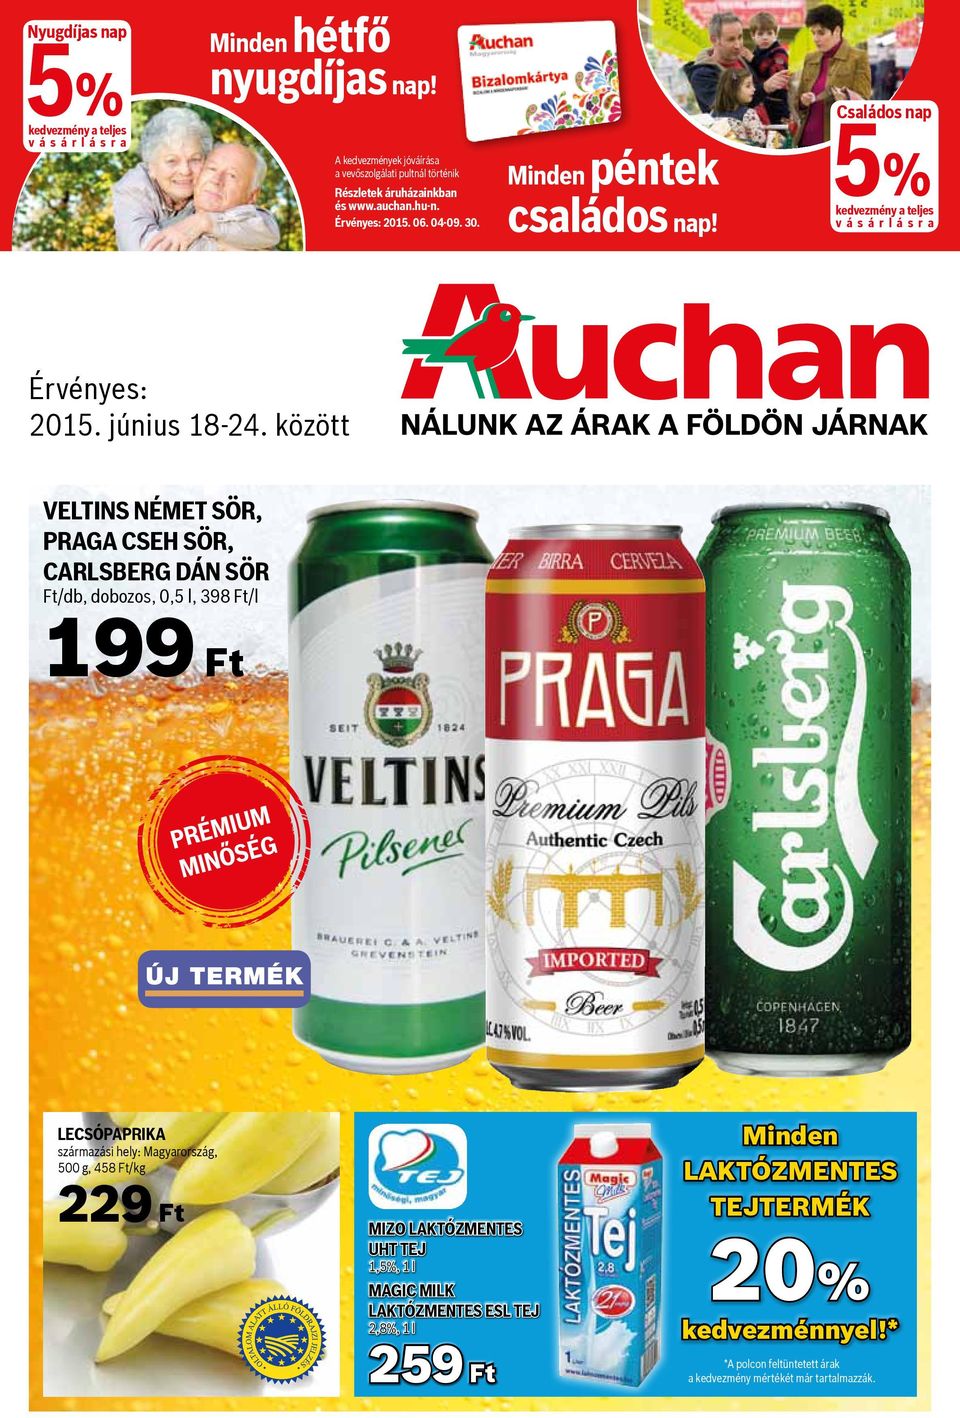 között Veltins német sör, Praga cseh sör, Carlsberg dán sör Ft/db, dobozos, 0,5 l, 398 Ft/l 199 Ft prémium minőség Lecsópaprika származási hely: Magyarország, 500 g, 458 Ft/kg 229